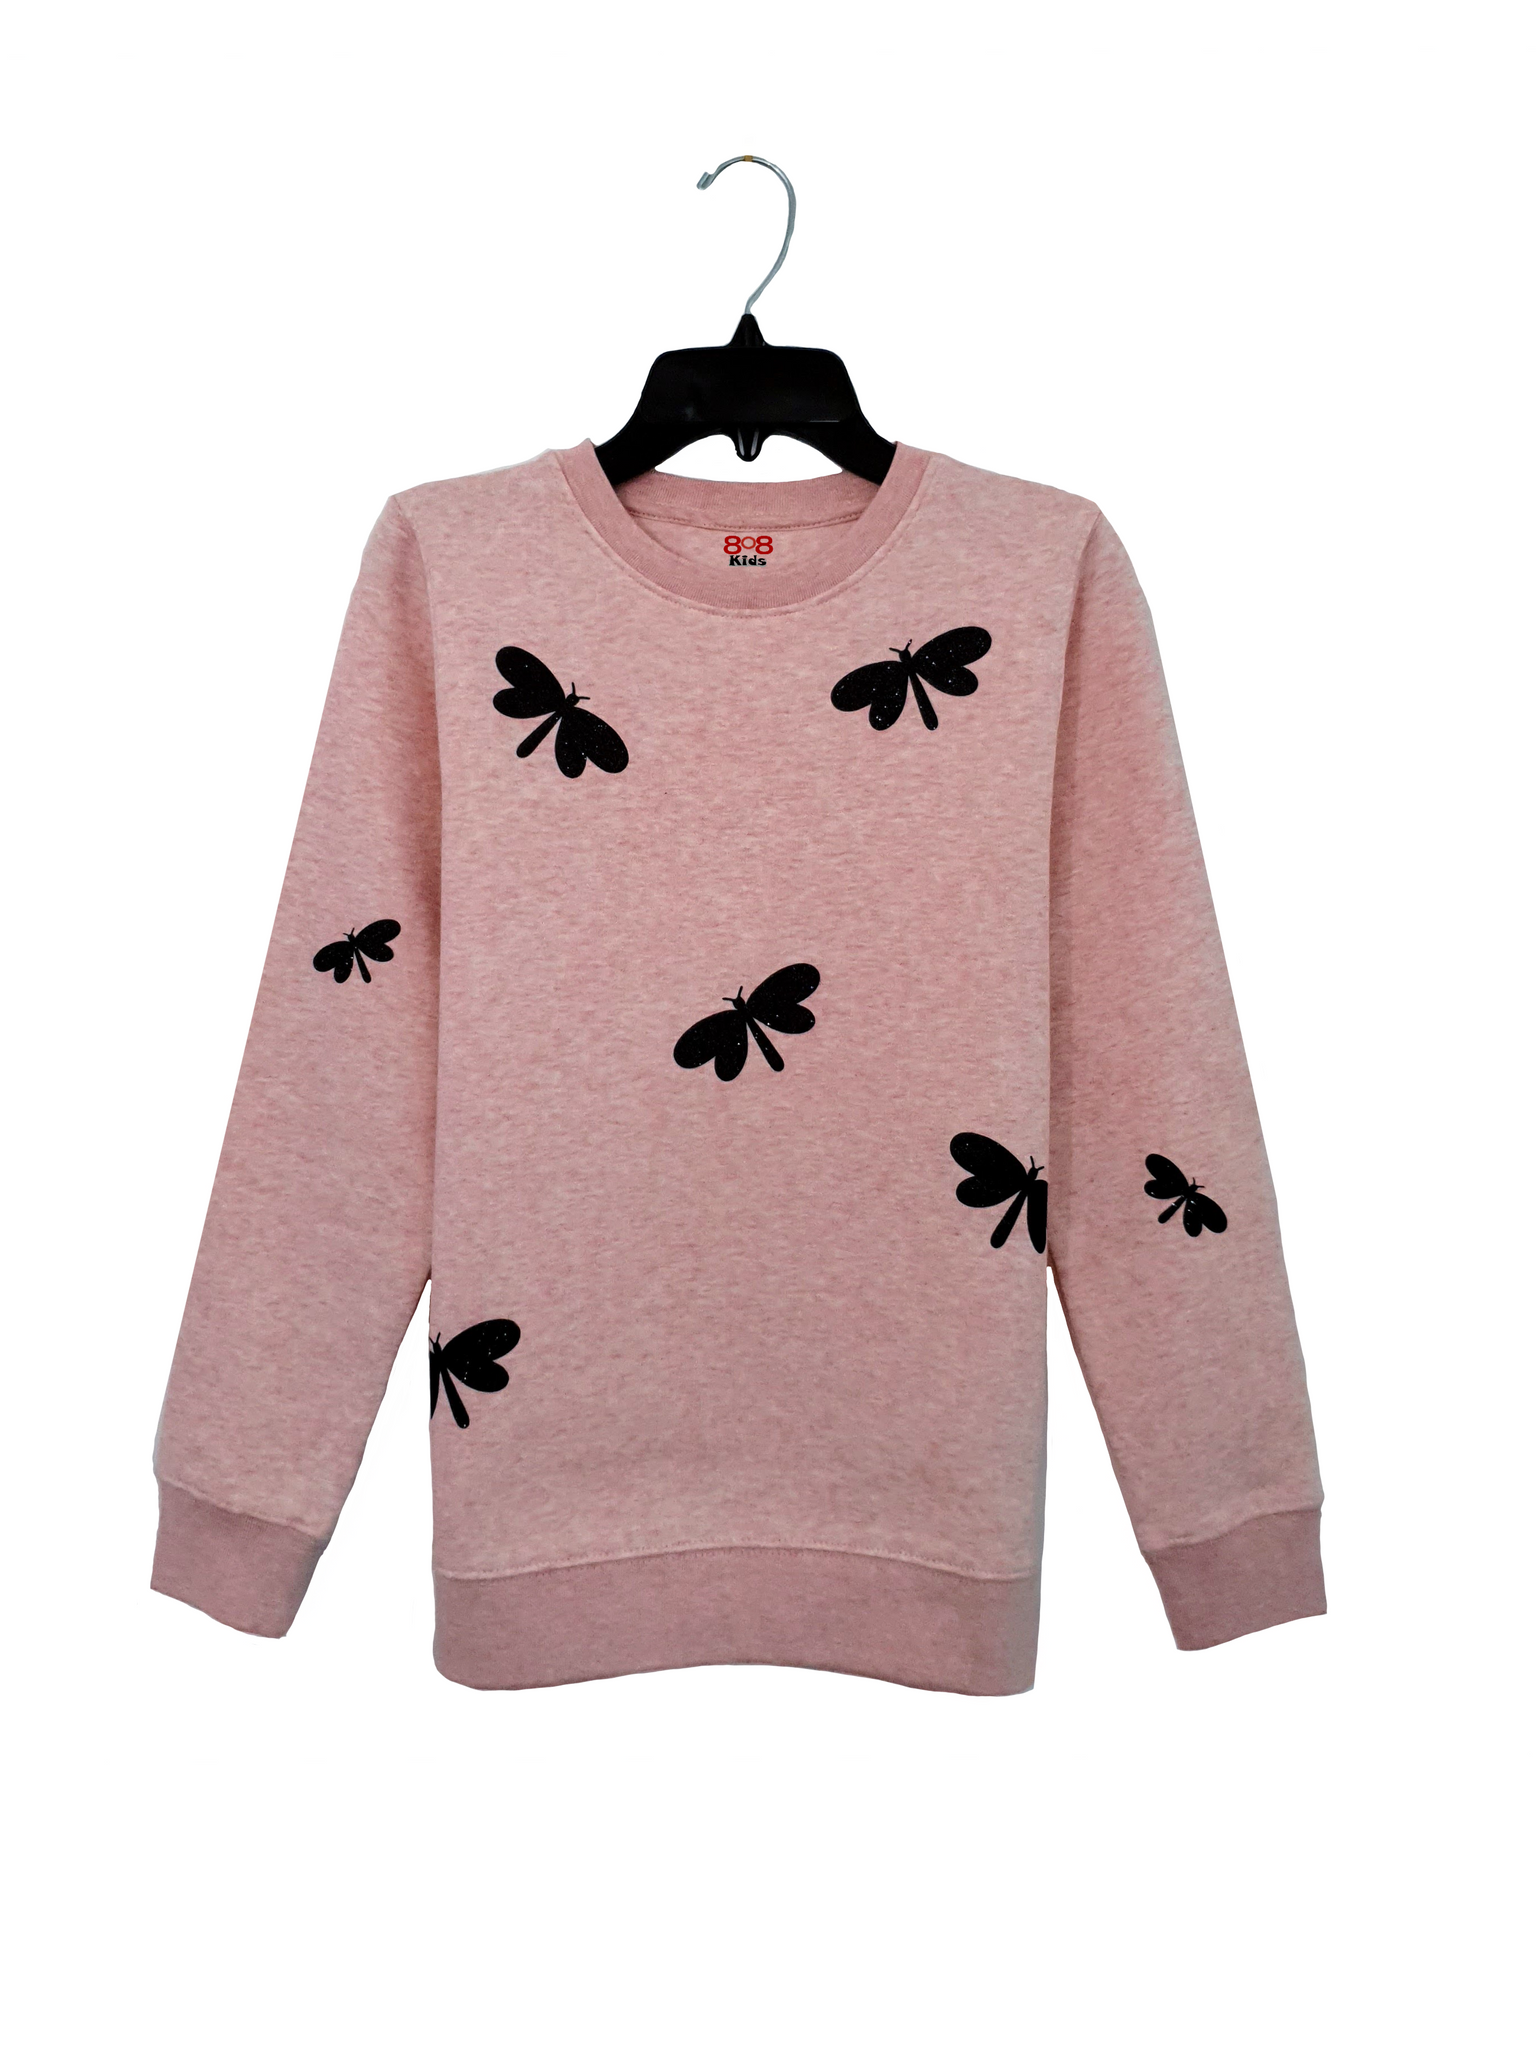 Black Butterfly Sweatshirt | 808 kids